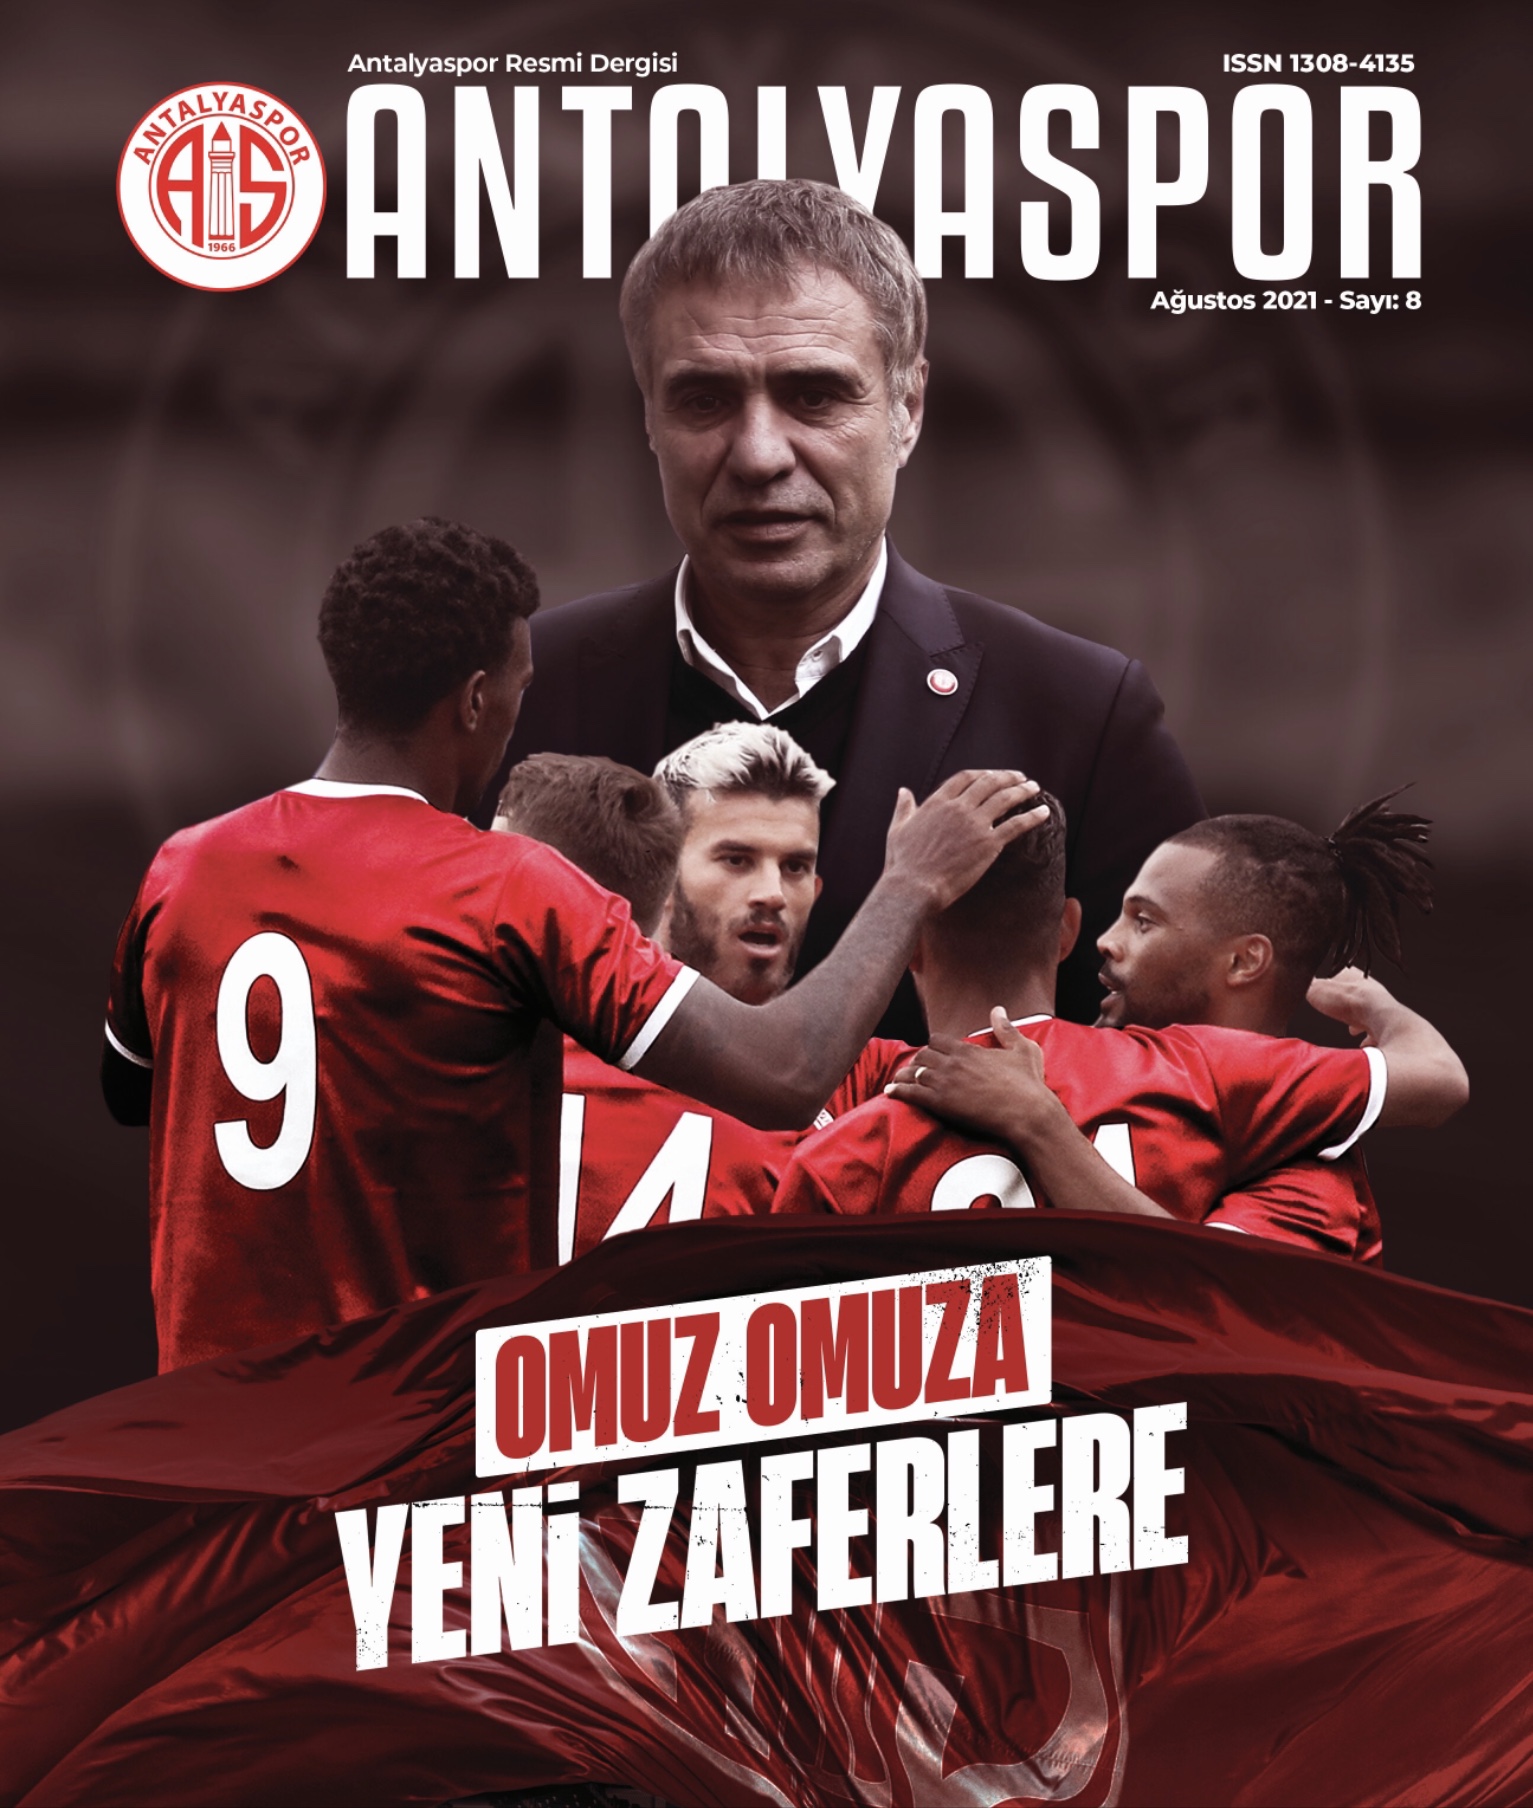 Antalyaspor Dergisi ağustos sayısı yayında